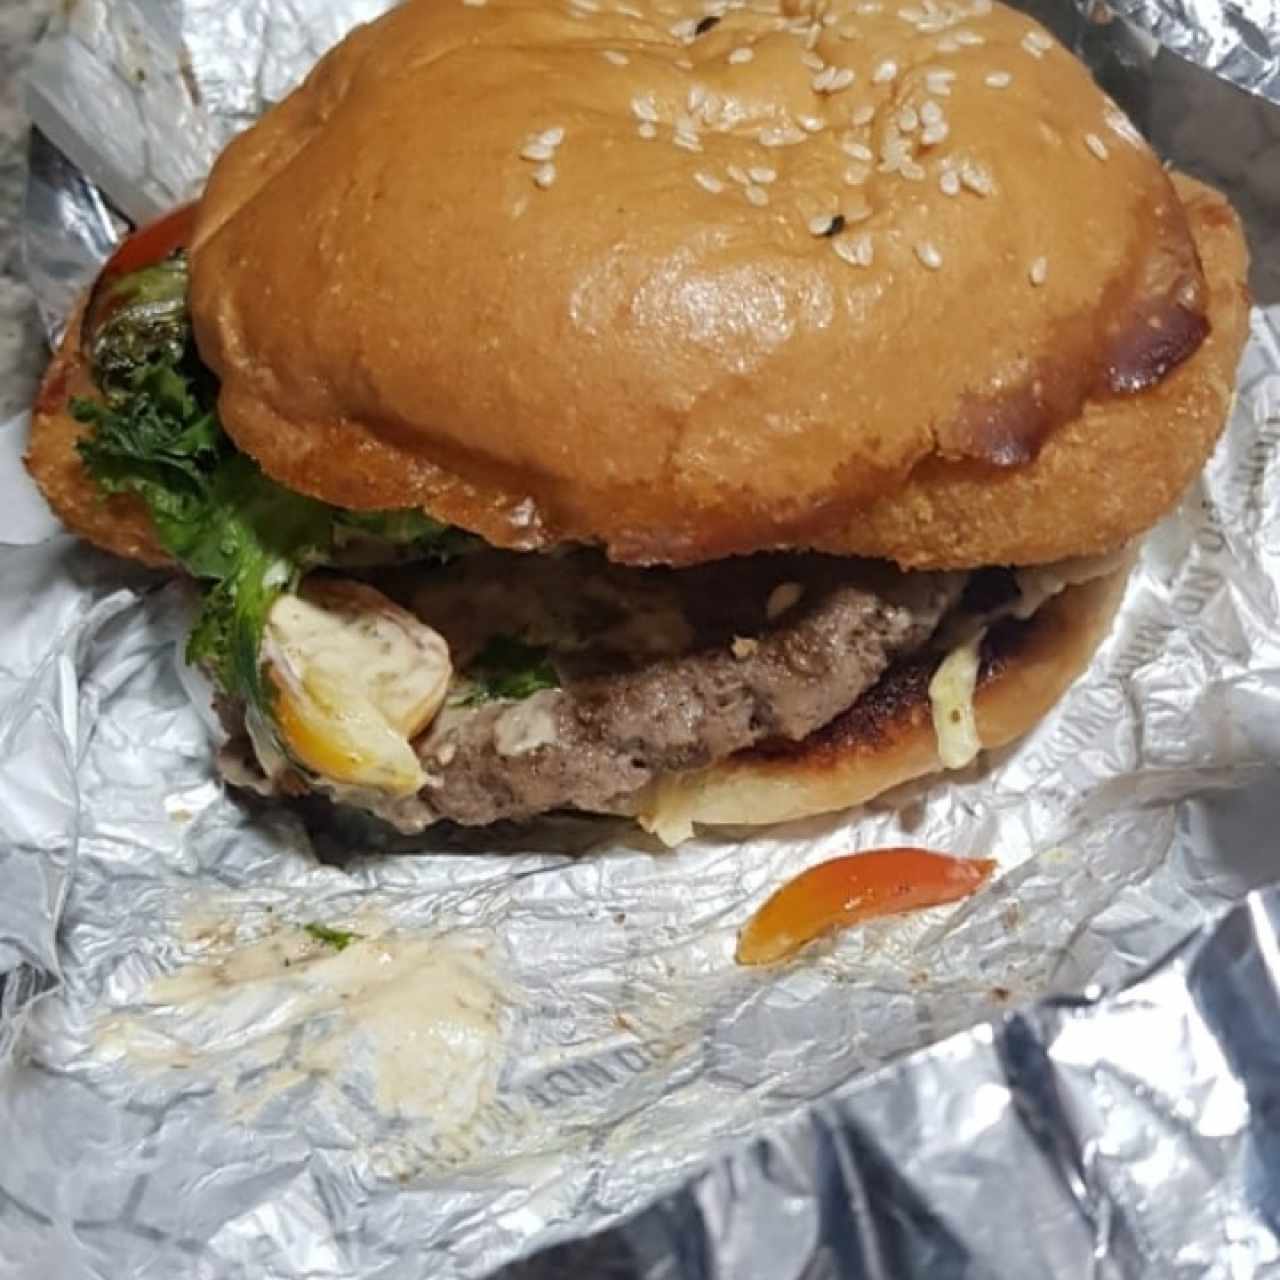 Burgers Clásicas - Retro Burger Clásica